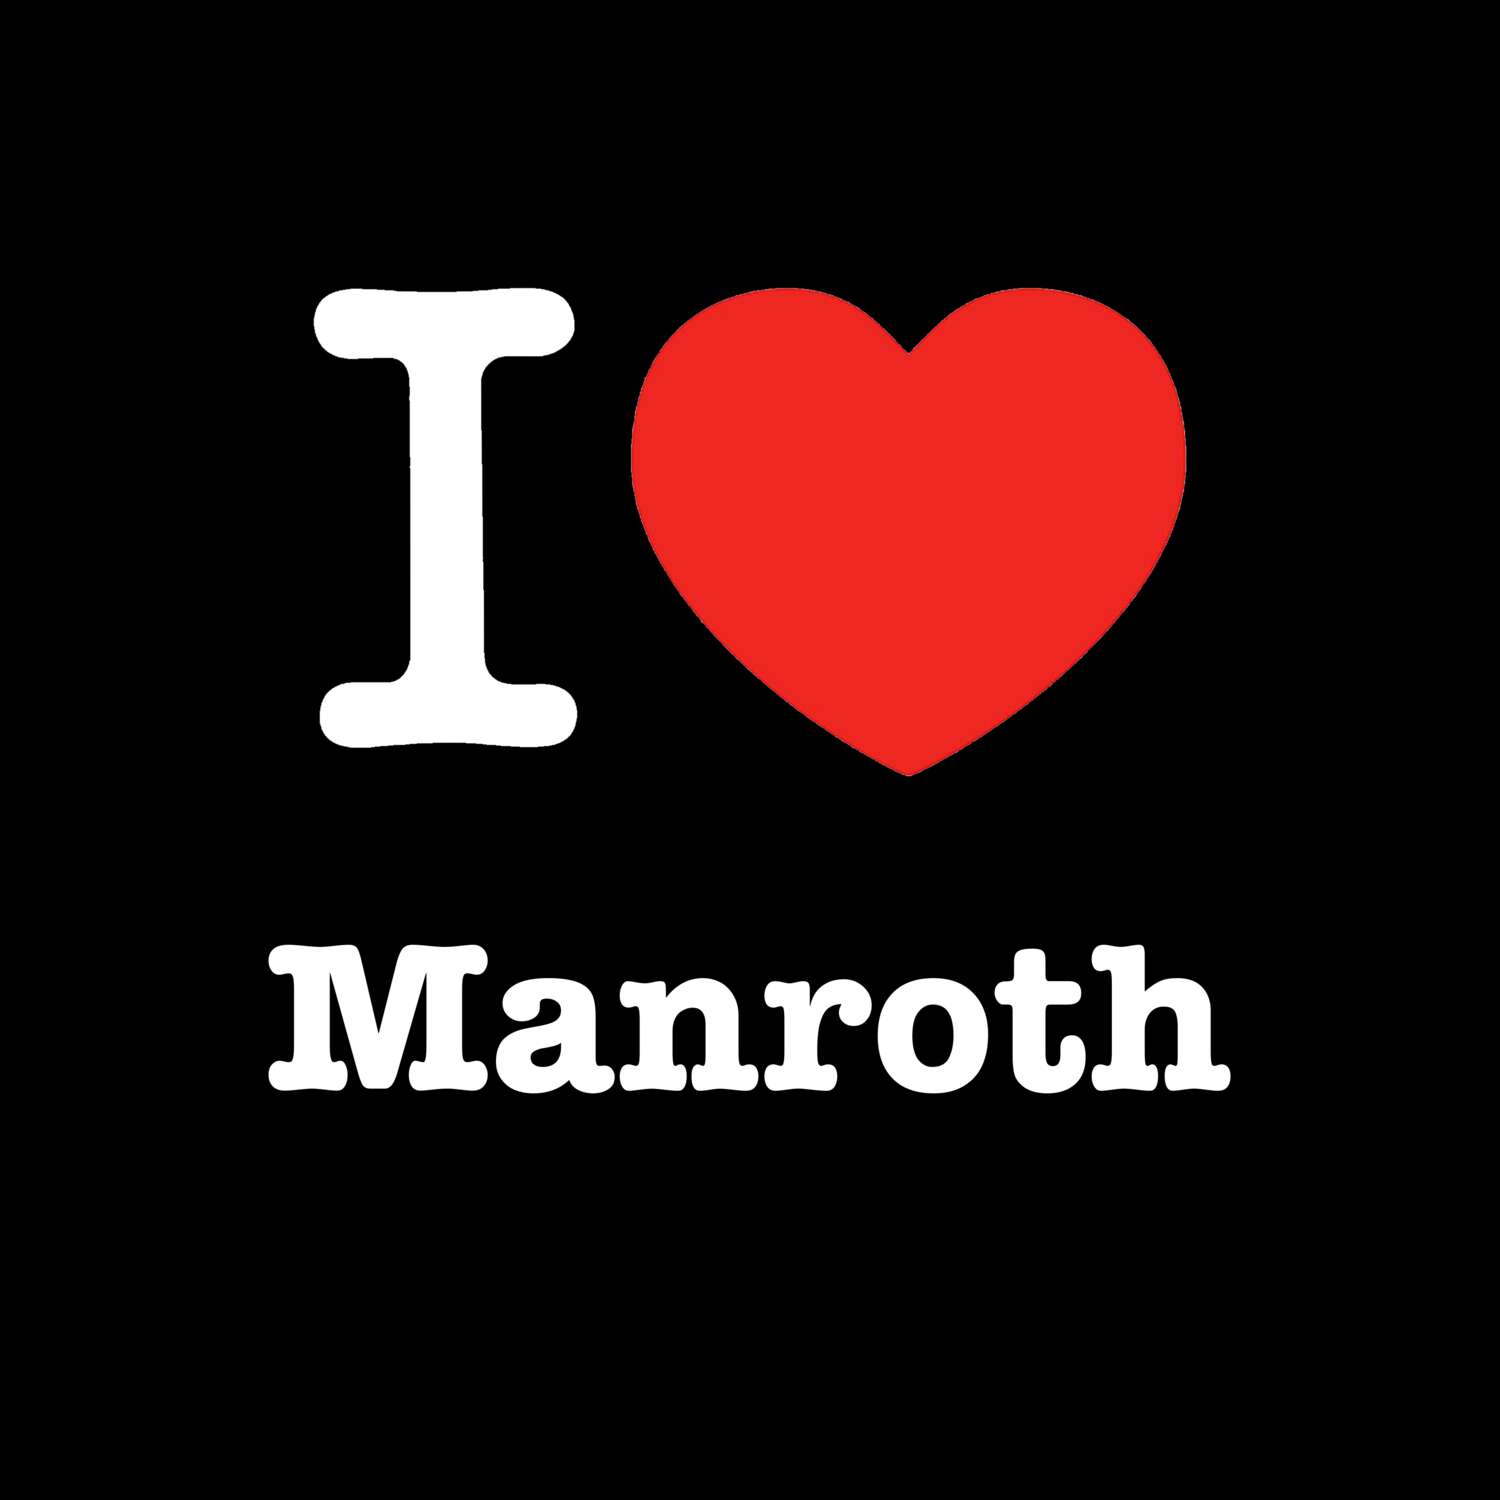 Manroth T-Shirt »I love«